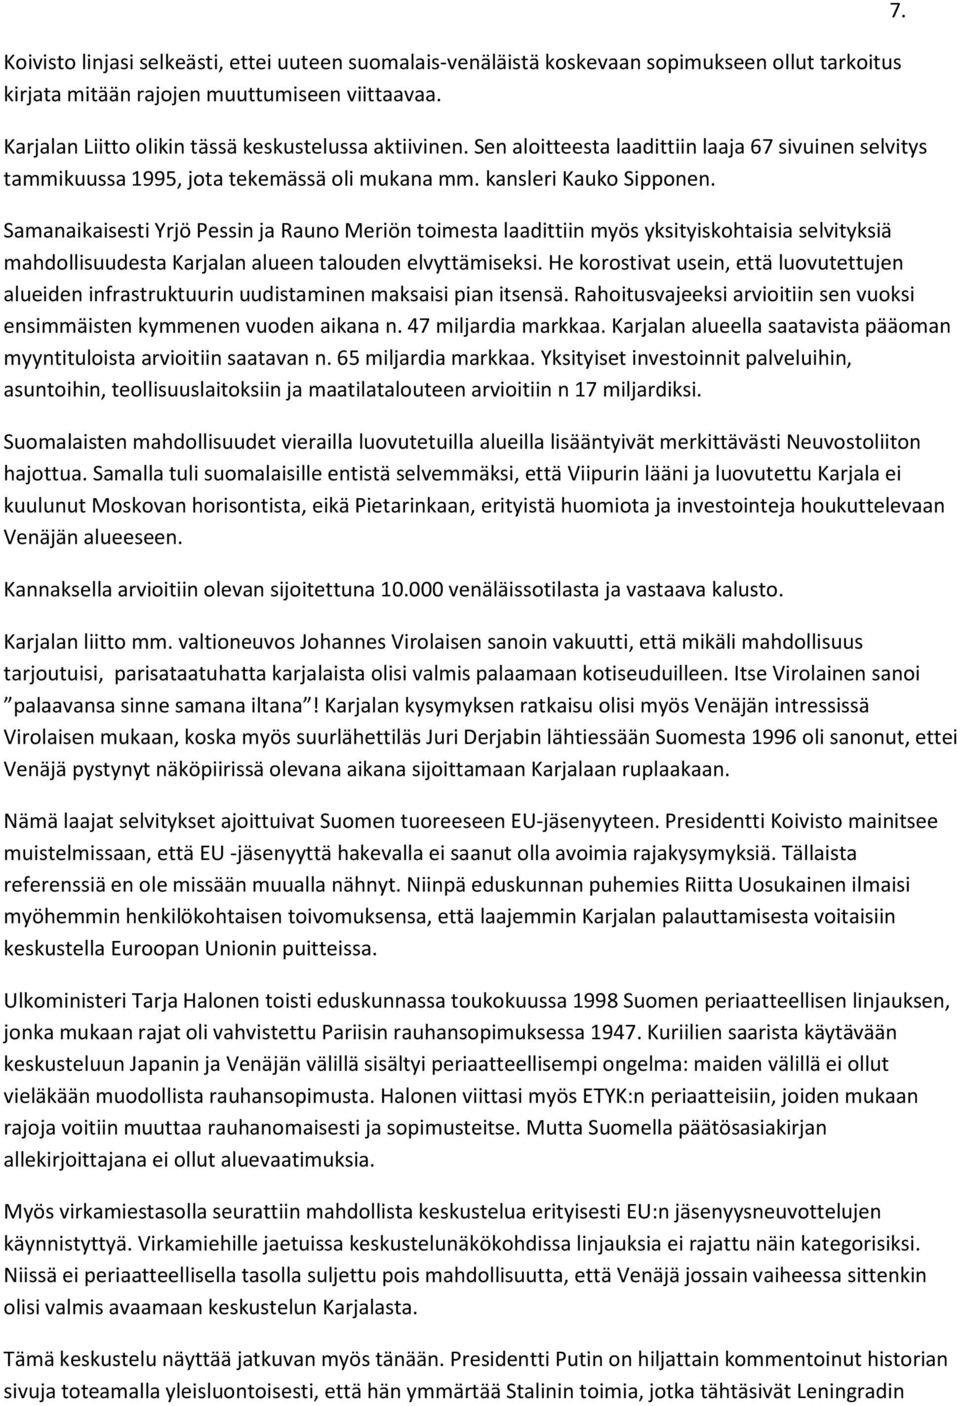 Samanaikaisesti Yrjö Pessin ja Rauno Meriön toimesta laadittiin myös yksityiskohtaisia selvityksiä mahdollisuudesta Karjalan alueen talouden elvyttämiseksi.